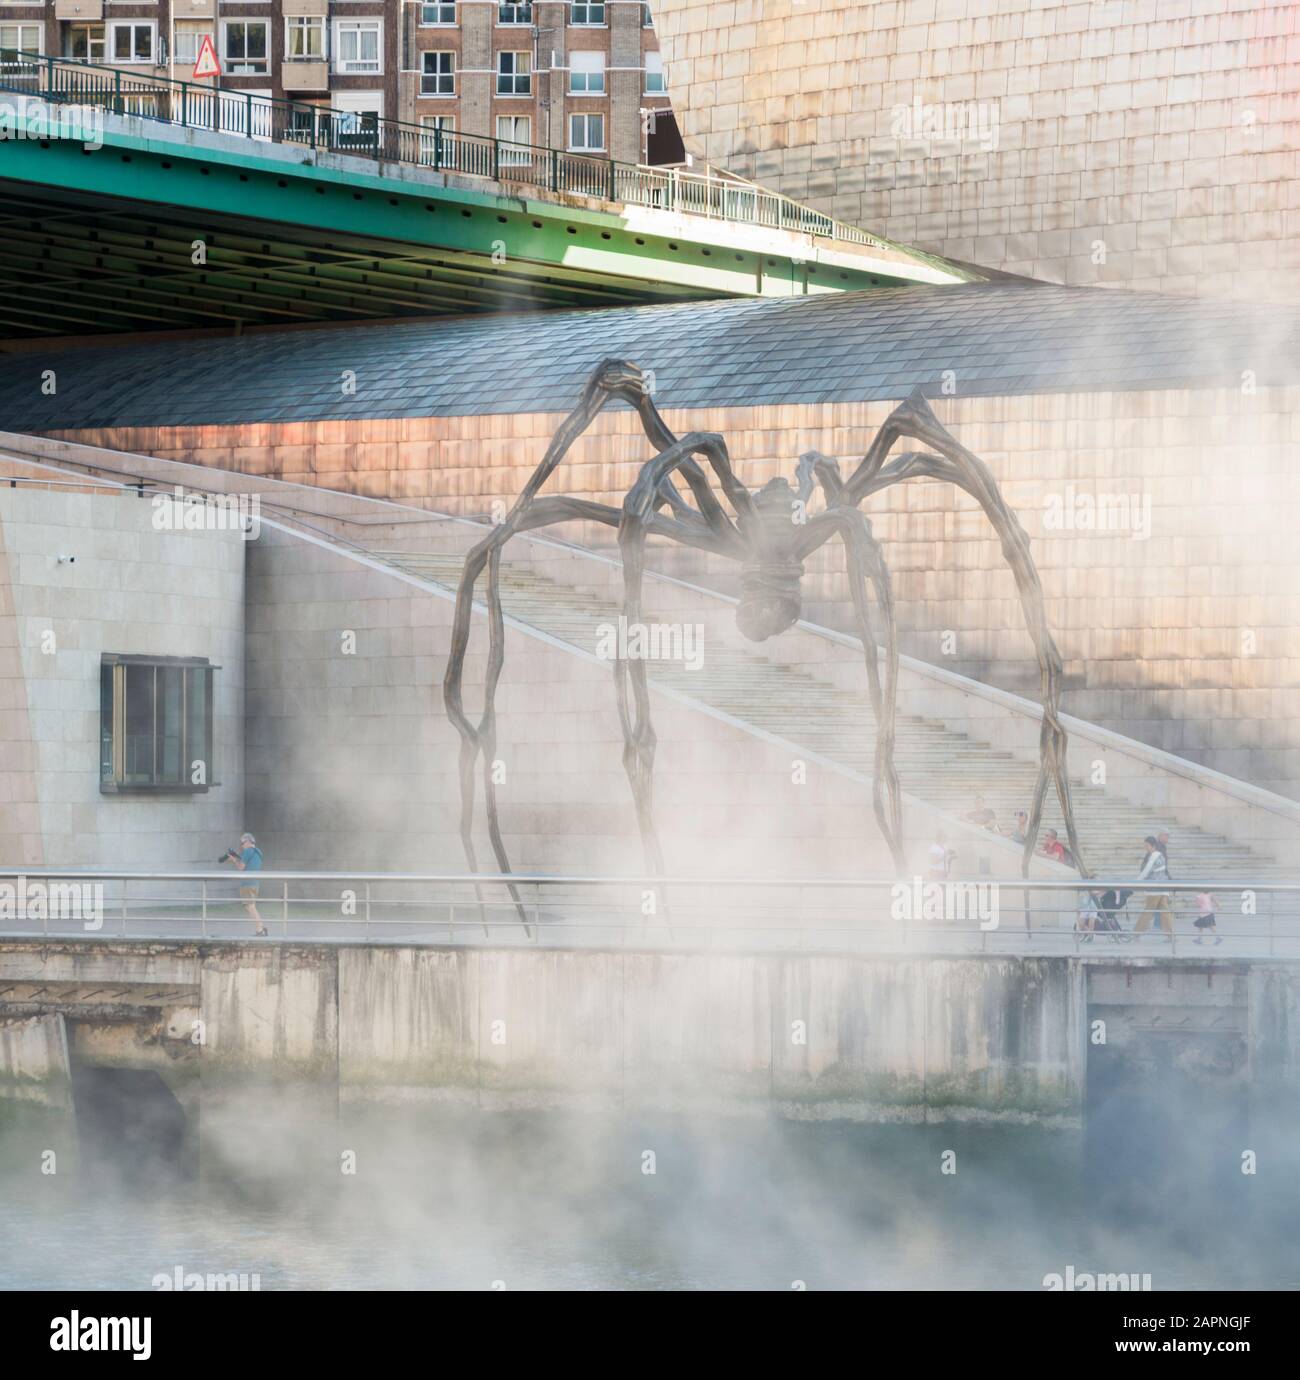 Maman, eine riesige Spinnenplastik außerhalb des Guggenheim Museums in Bilbao, Spanien. Stockfoto